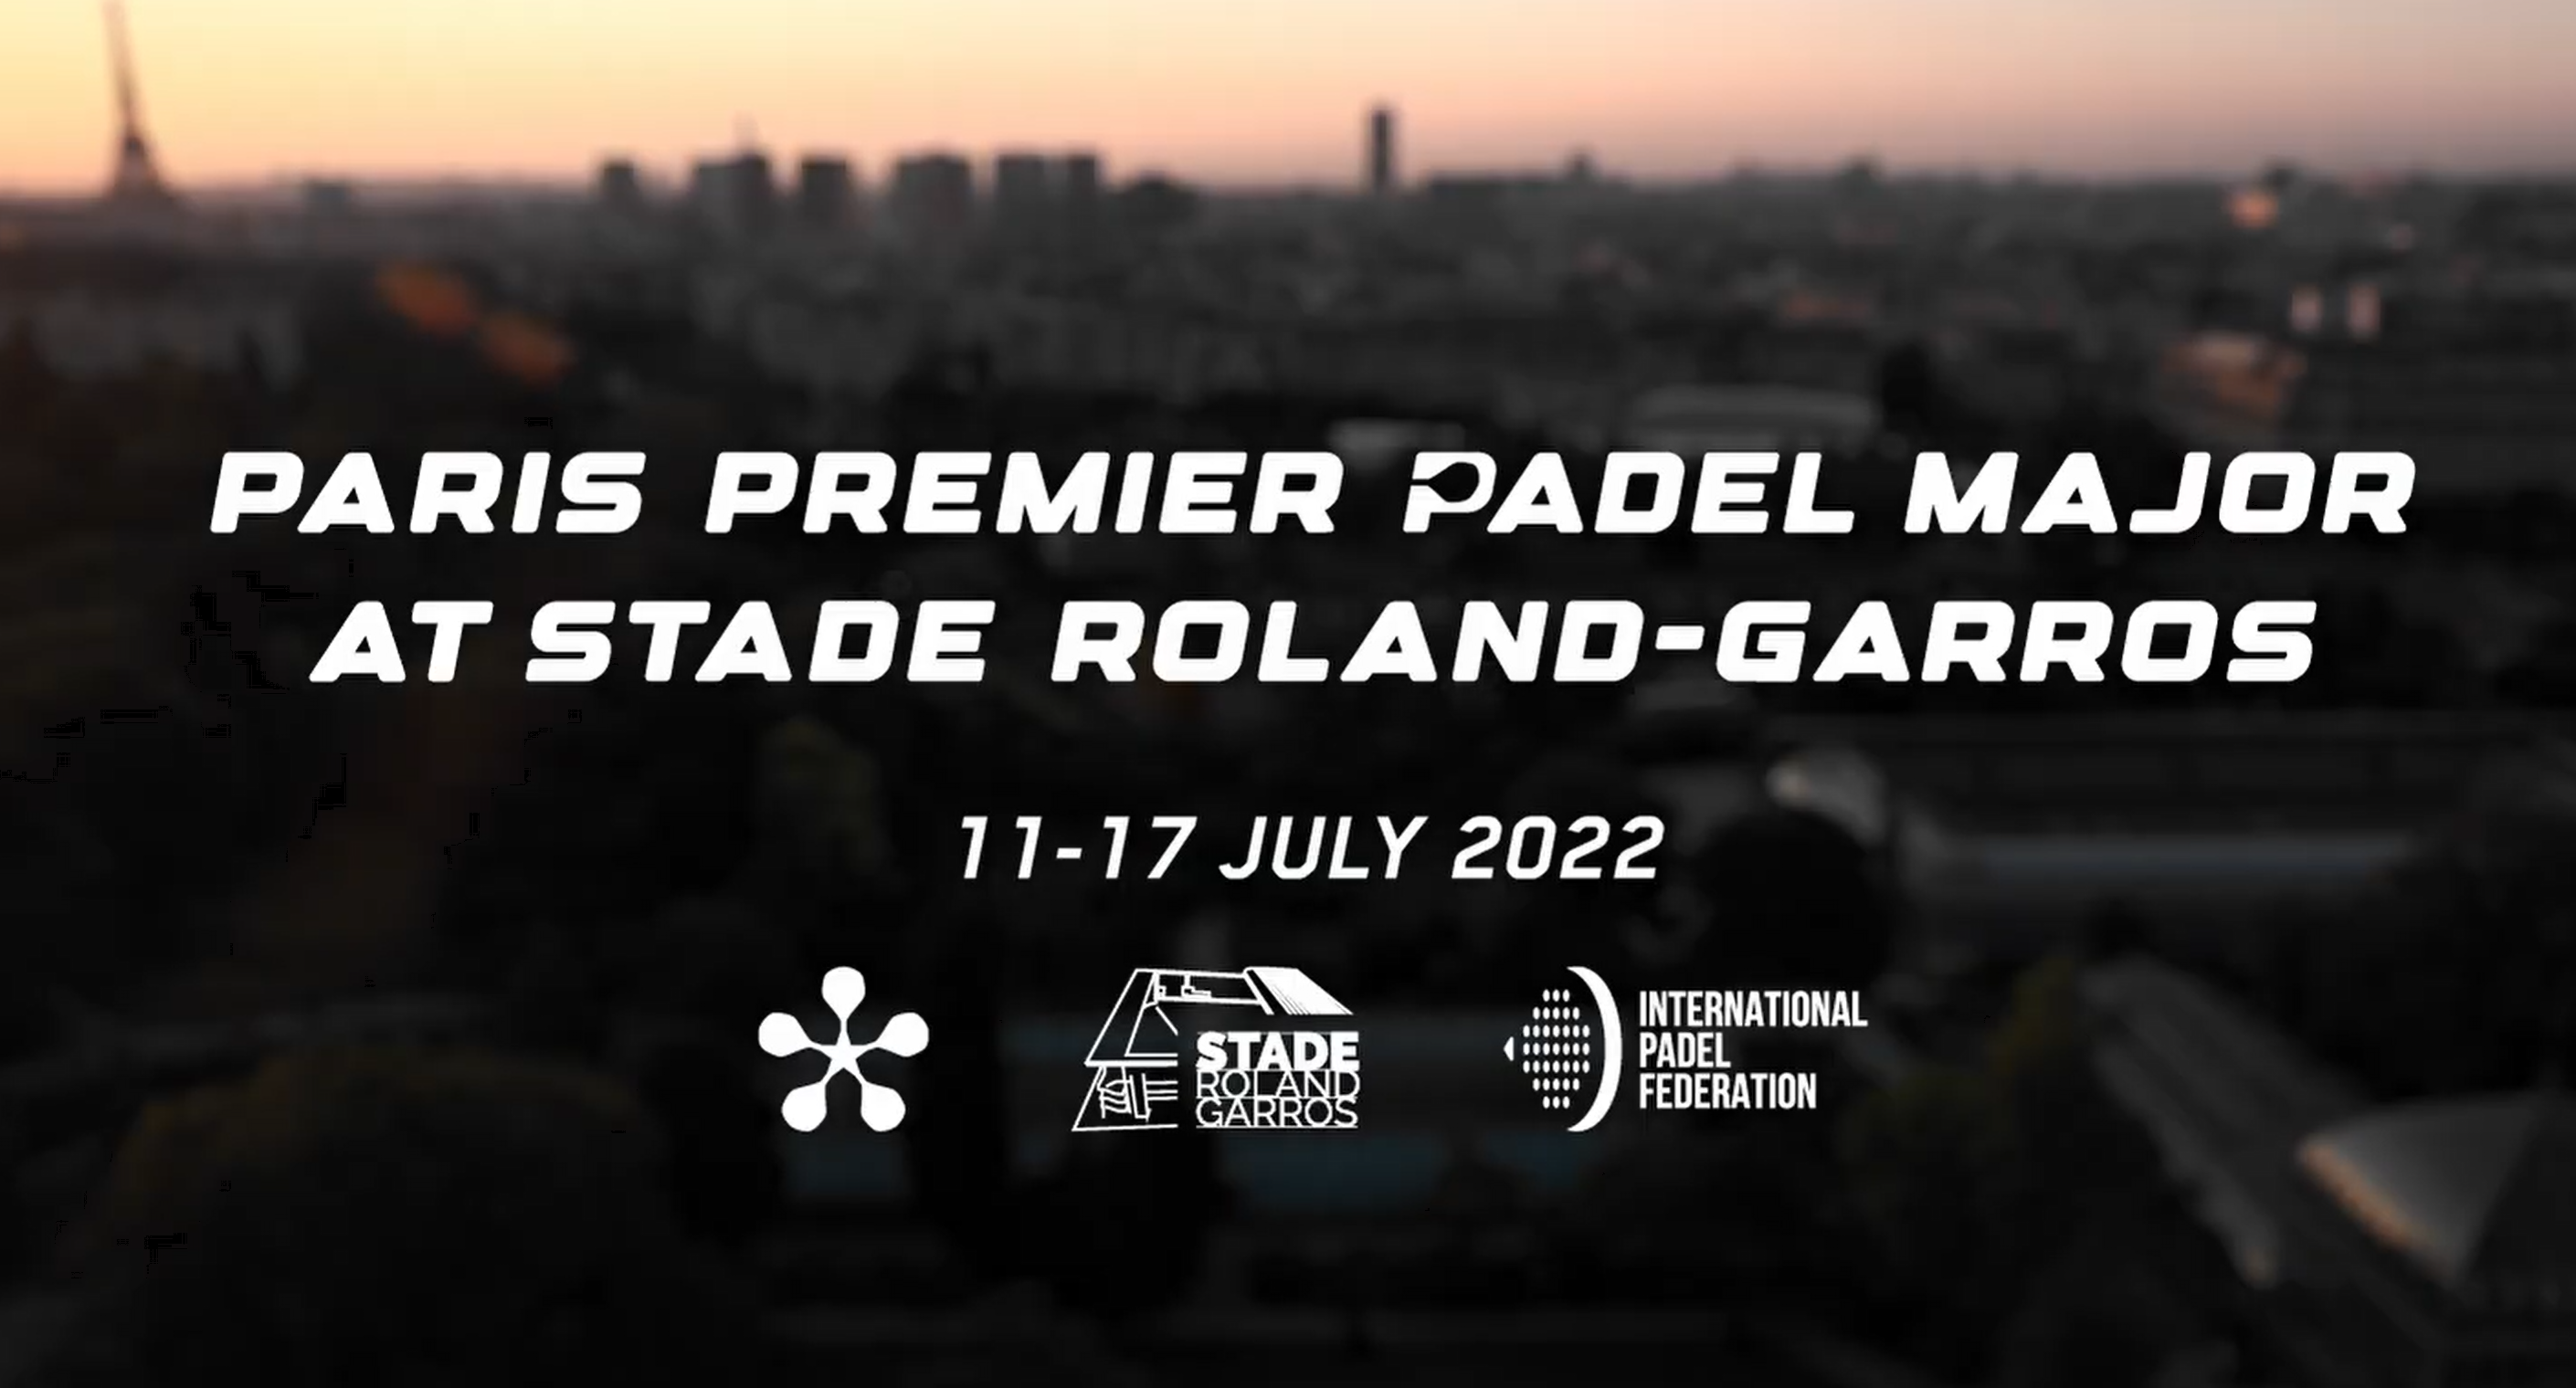 ECCEZIONALE: Paris Premier Padel Major allo stadio Roland-Garros dall'11 al 17 luglio 2022